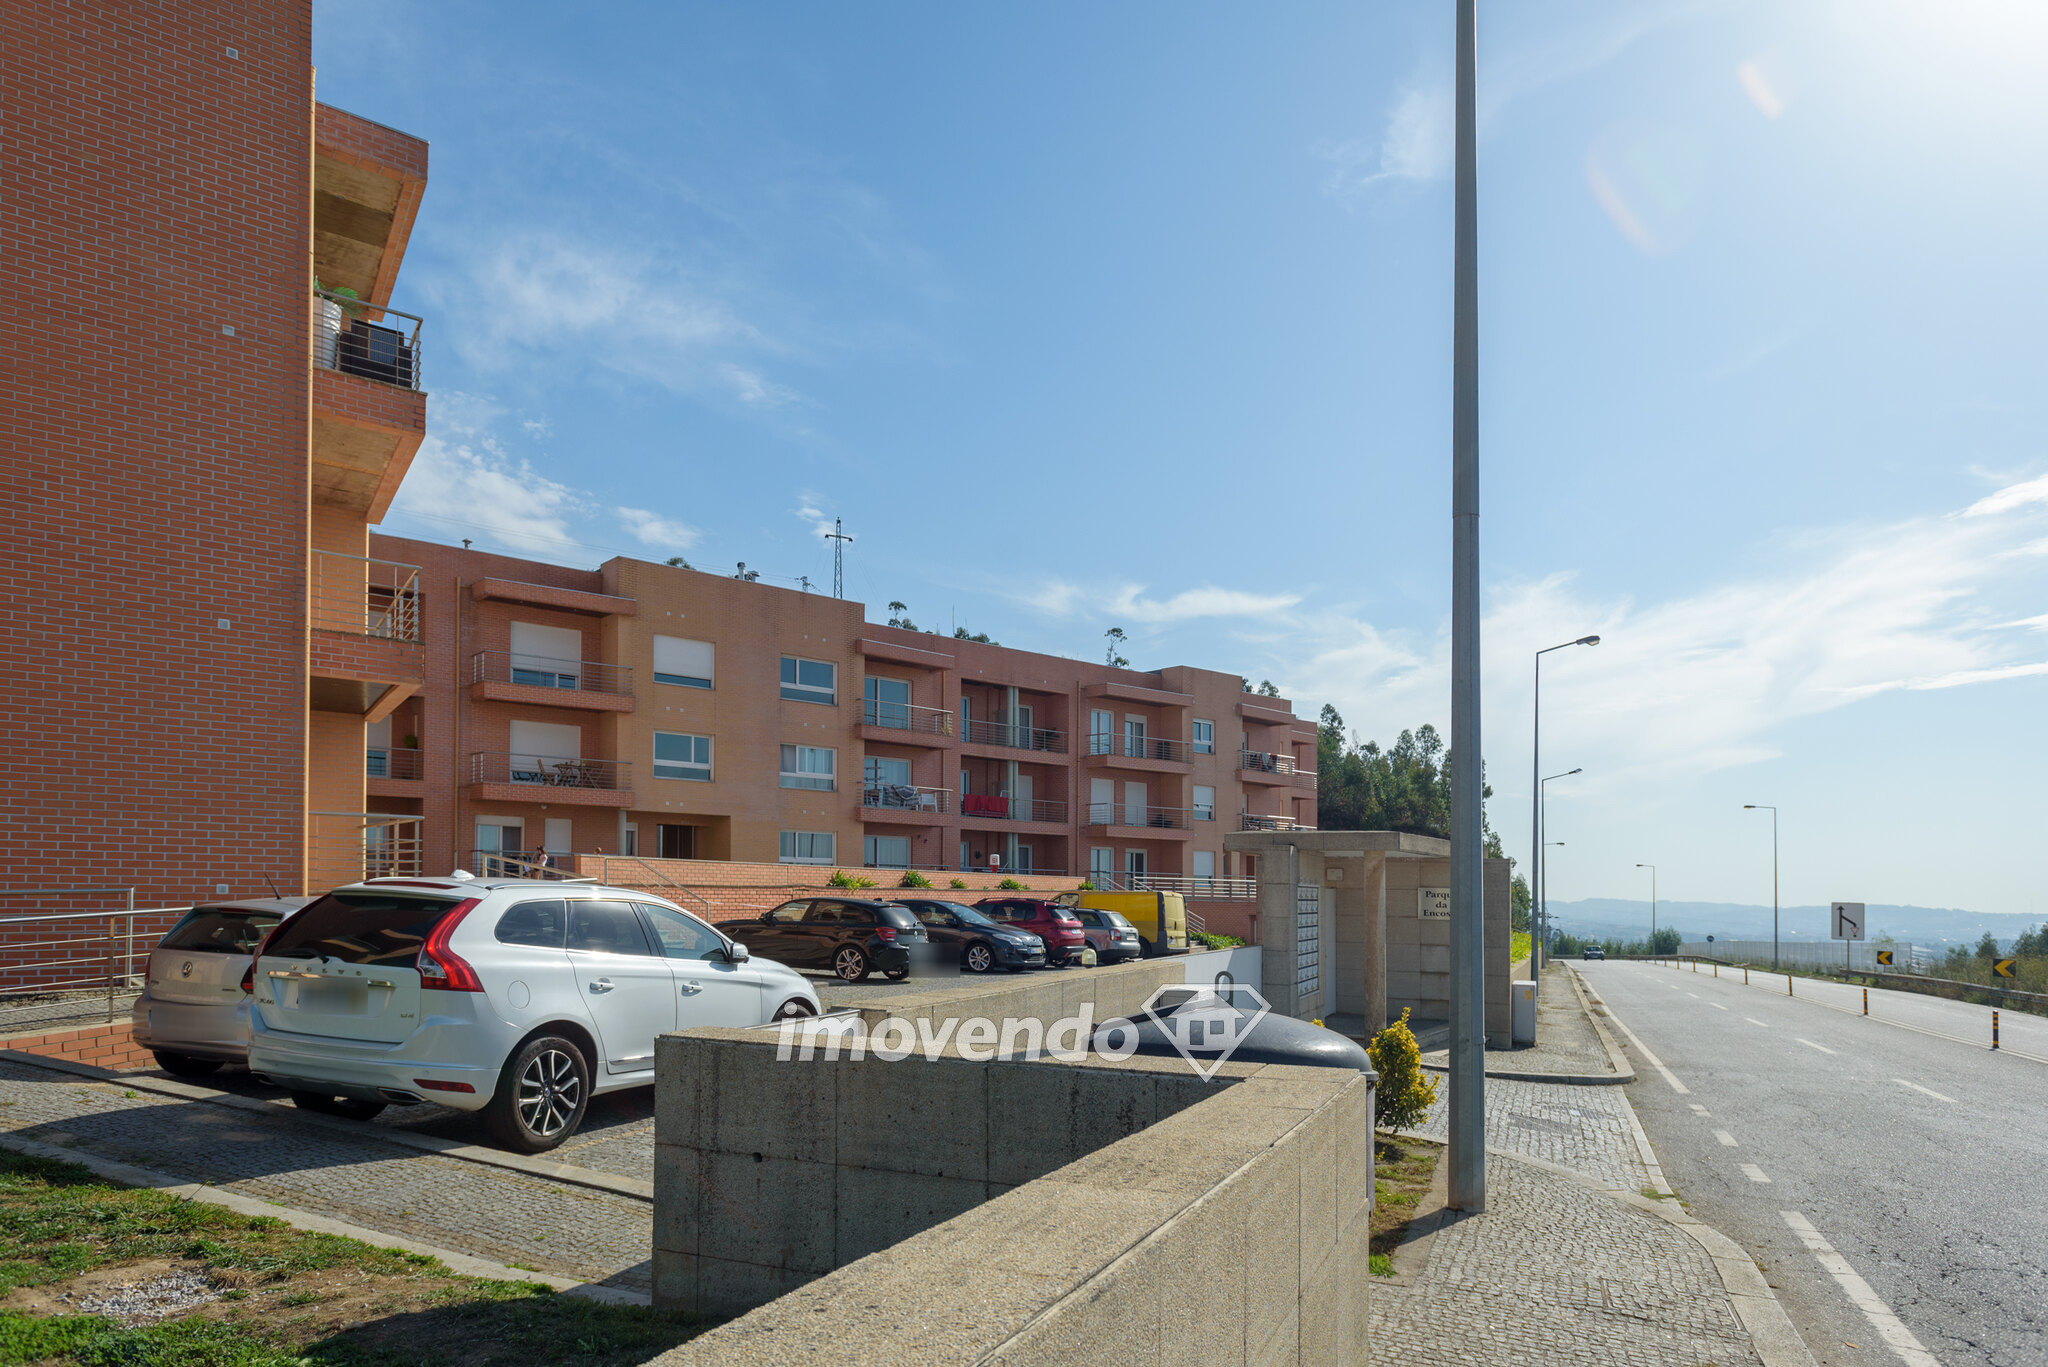 Apartamento T2 moderno, com estacionamento e áreas amplas, em Valongo